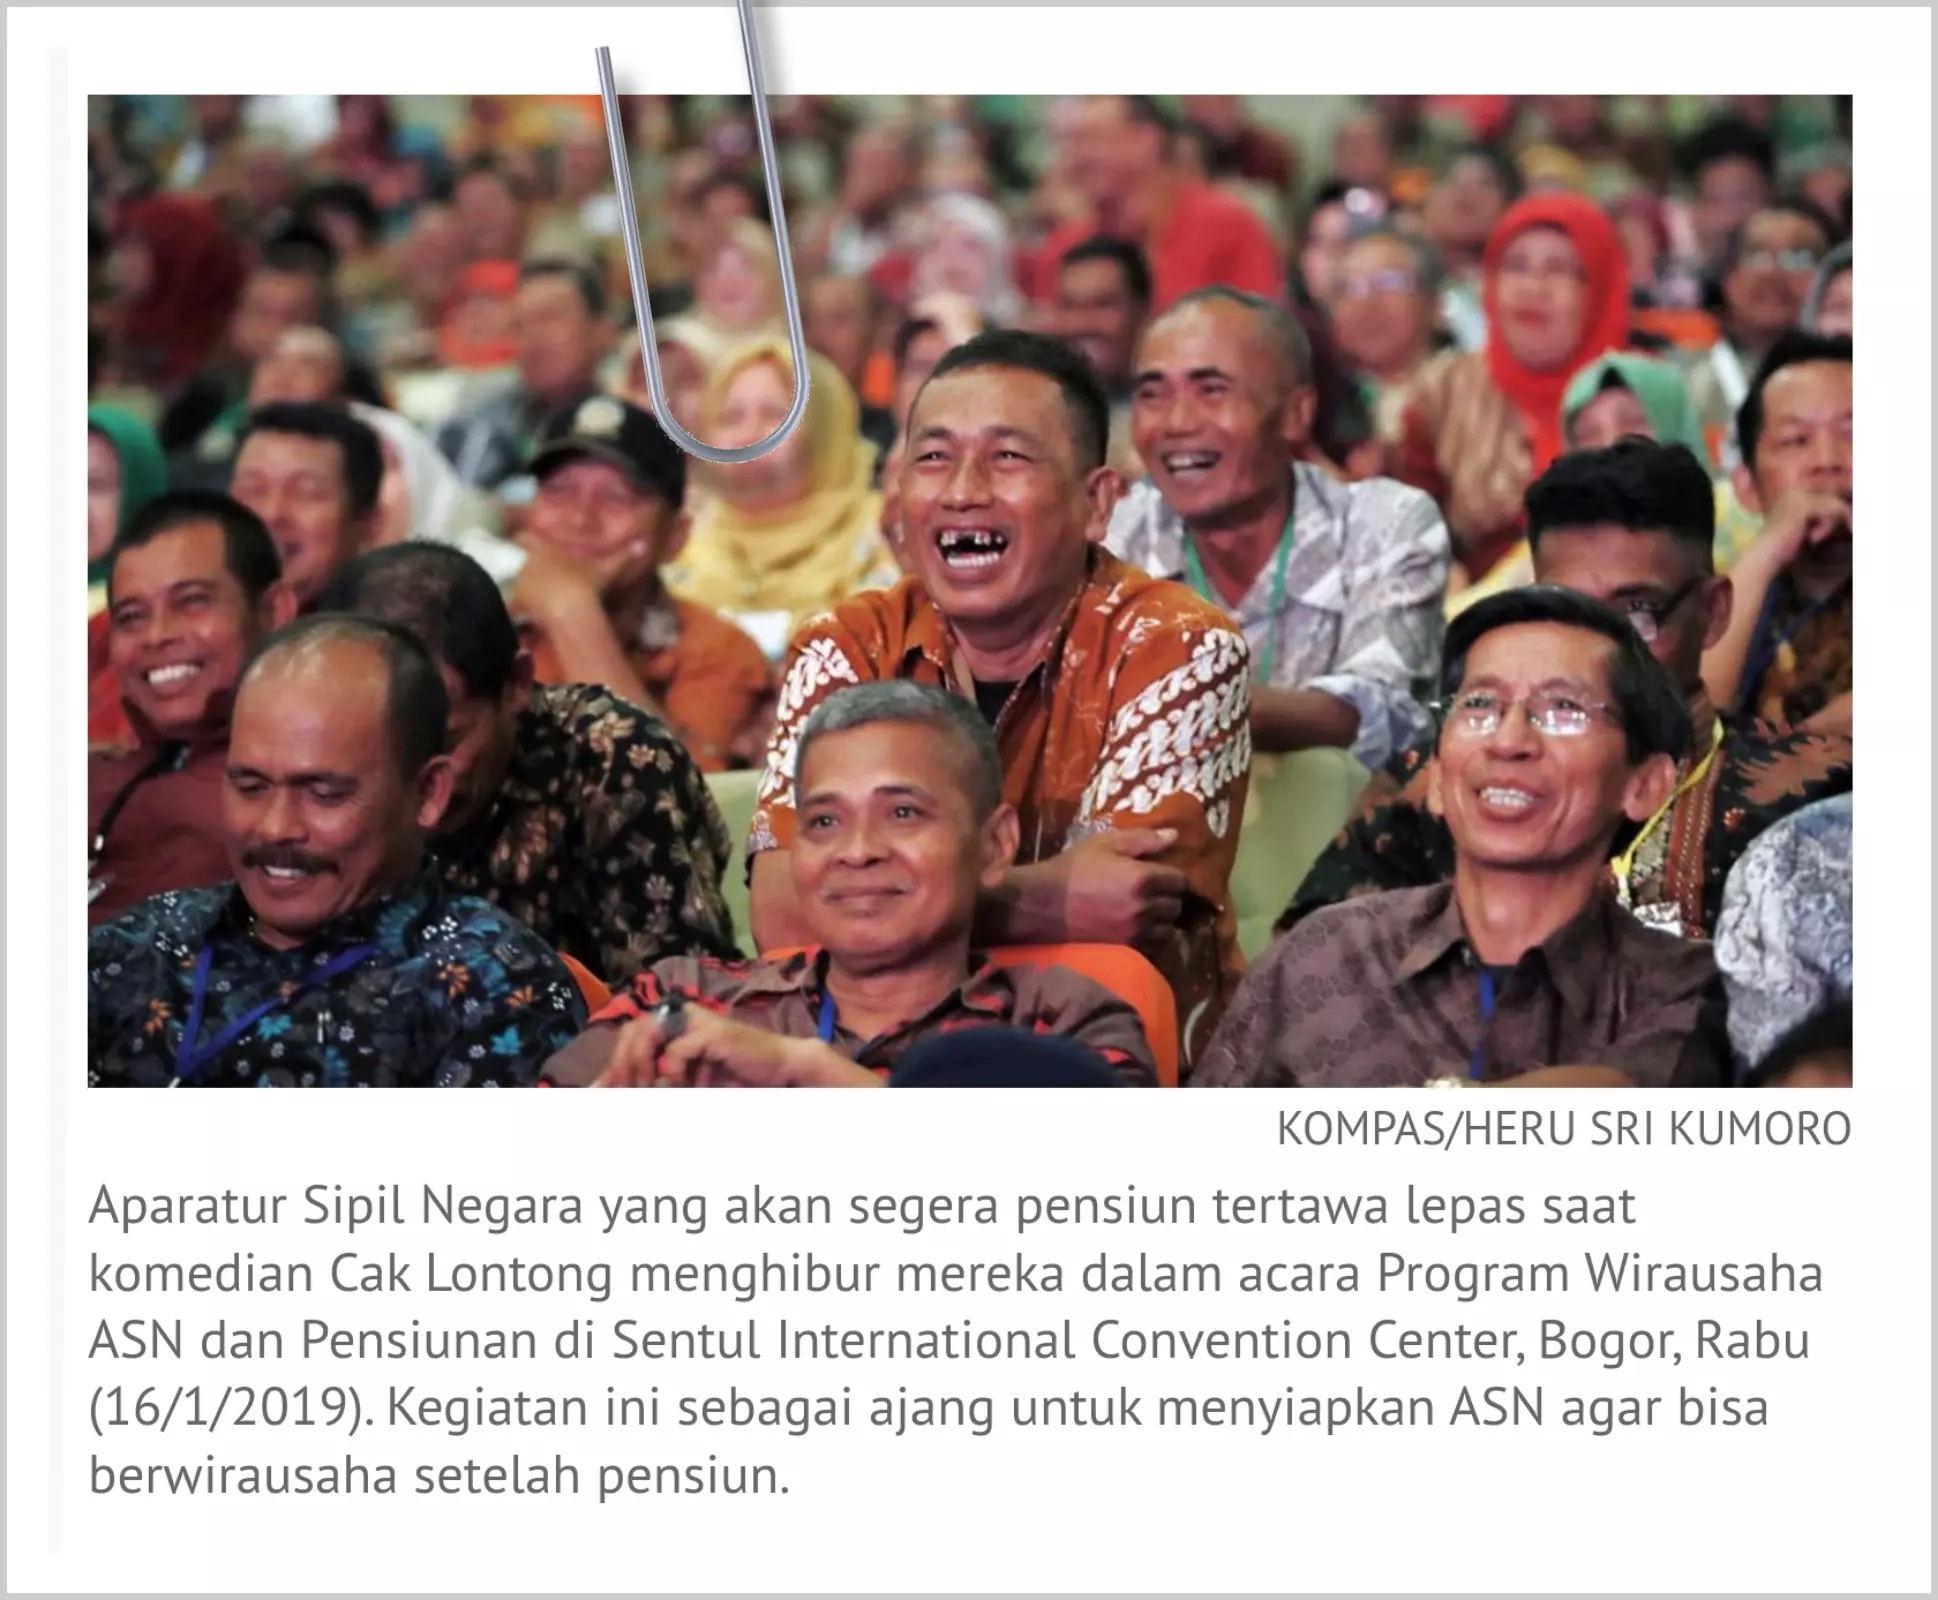 Foto orang tertawa dalam media